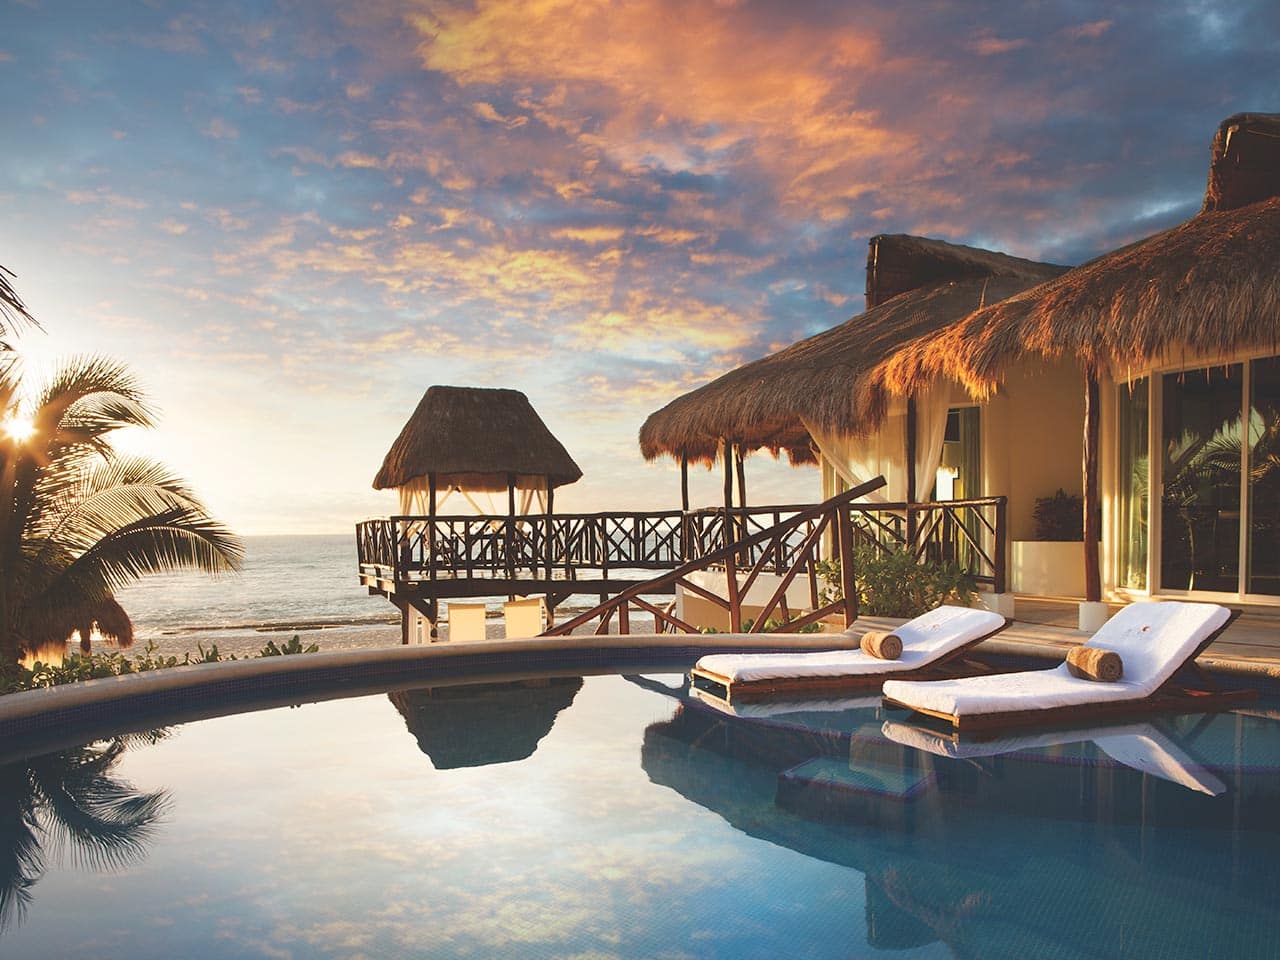 Most Romantic Hotels in Riviera Maya, Mexico: El Dorado Casitas Royale